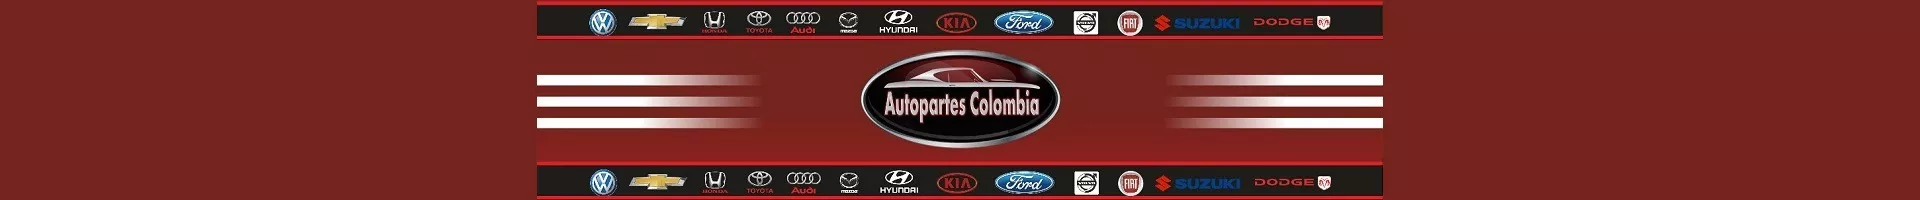 tiendas para comprar carro herramientas cali Autopartes Colombia